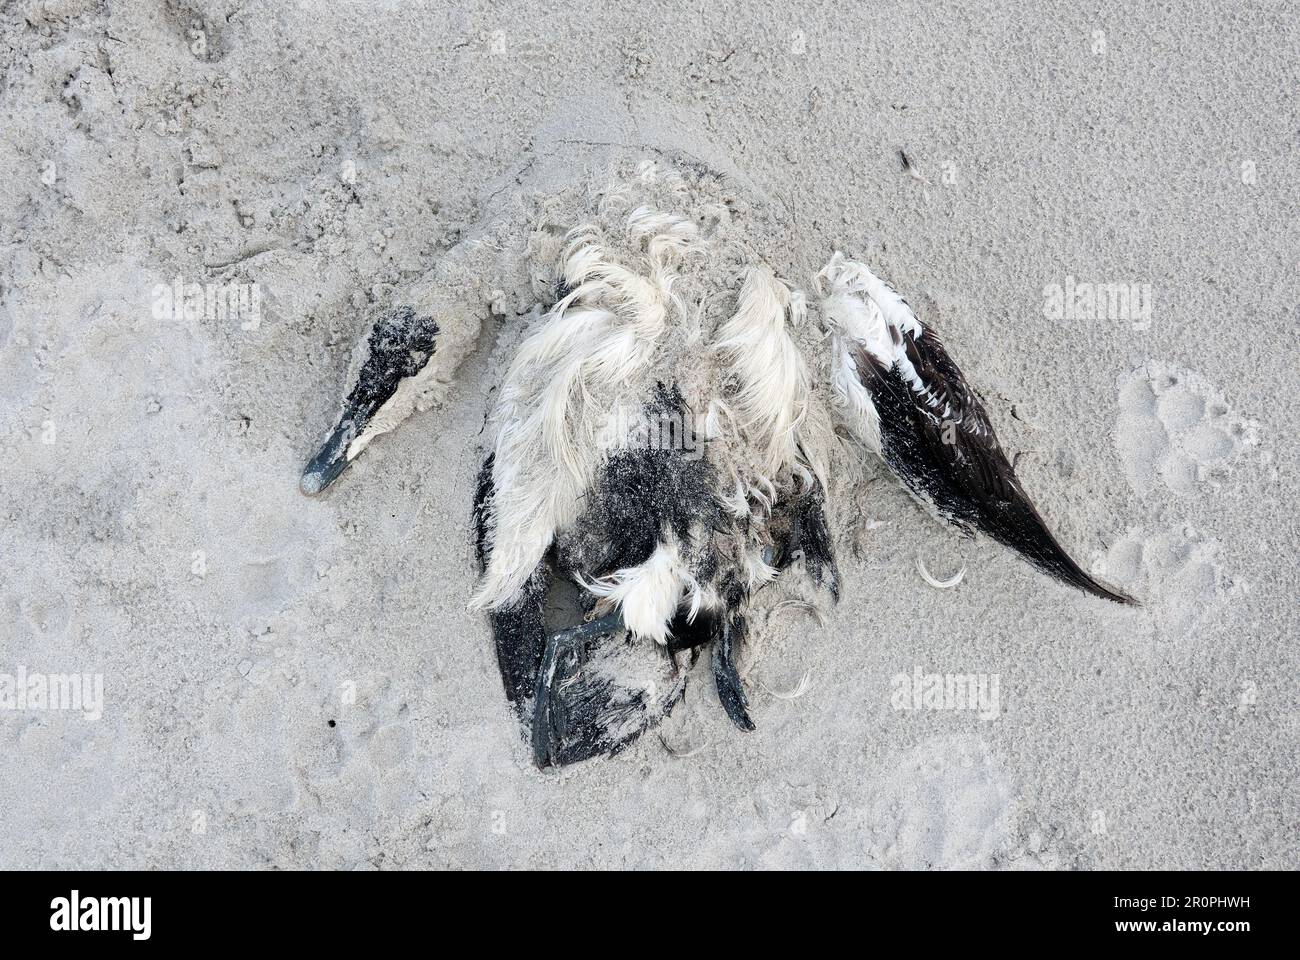 Toter Eider, möglicherweise ein Opfer der Vogelgrippe, bedeckt von Sand am Strand Stockfoto